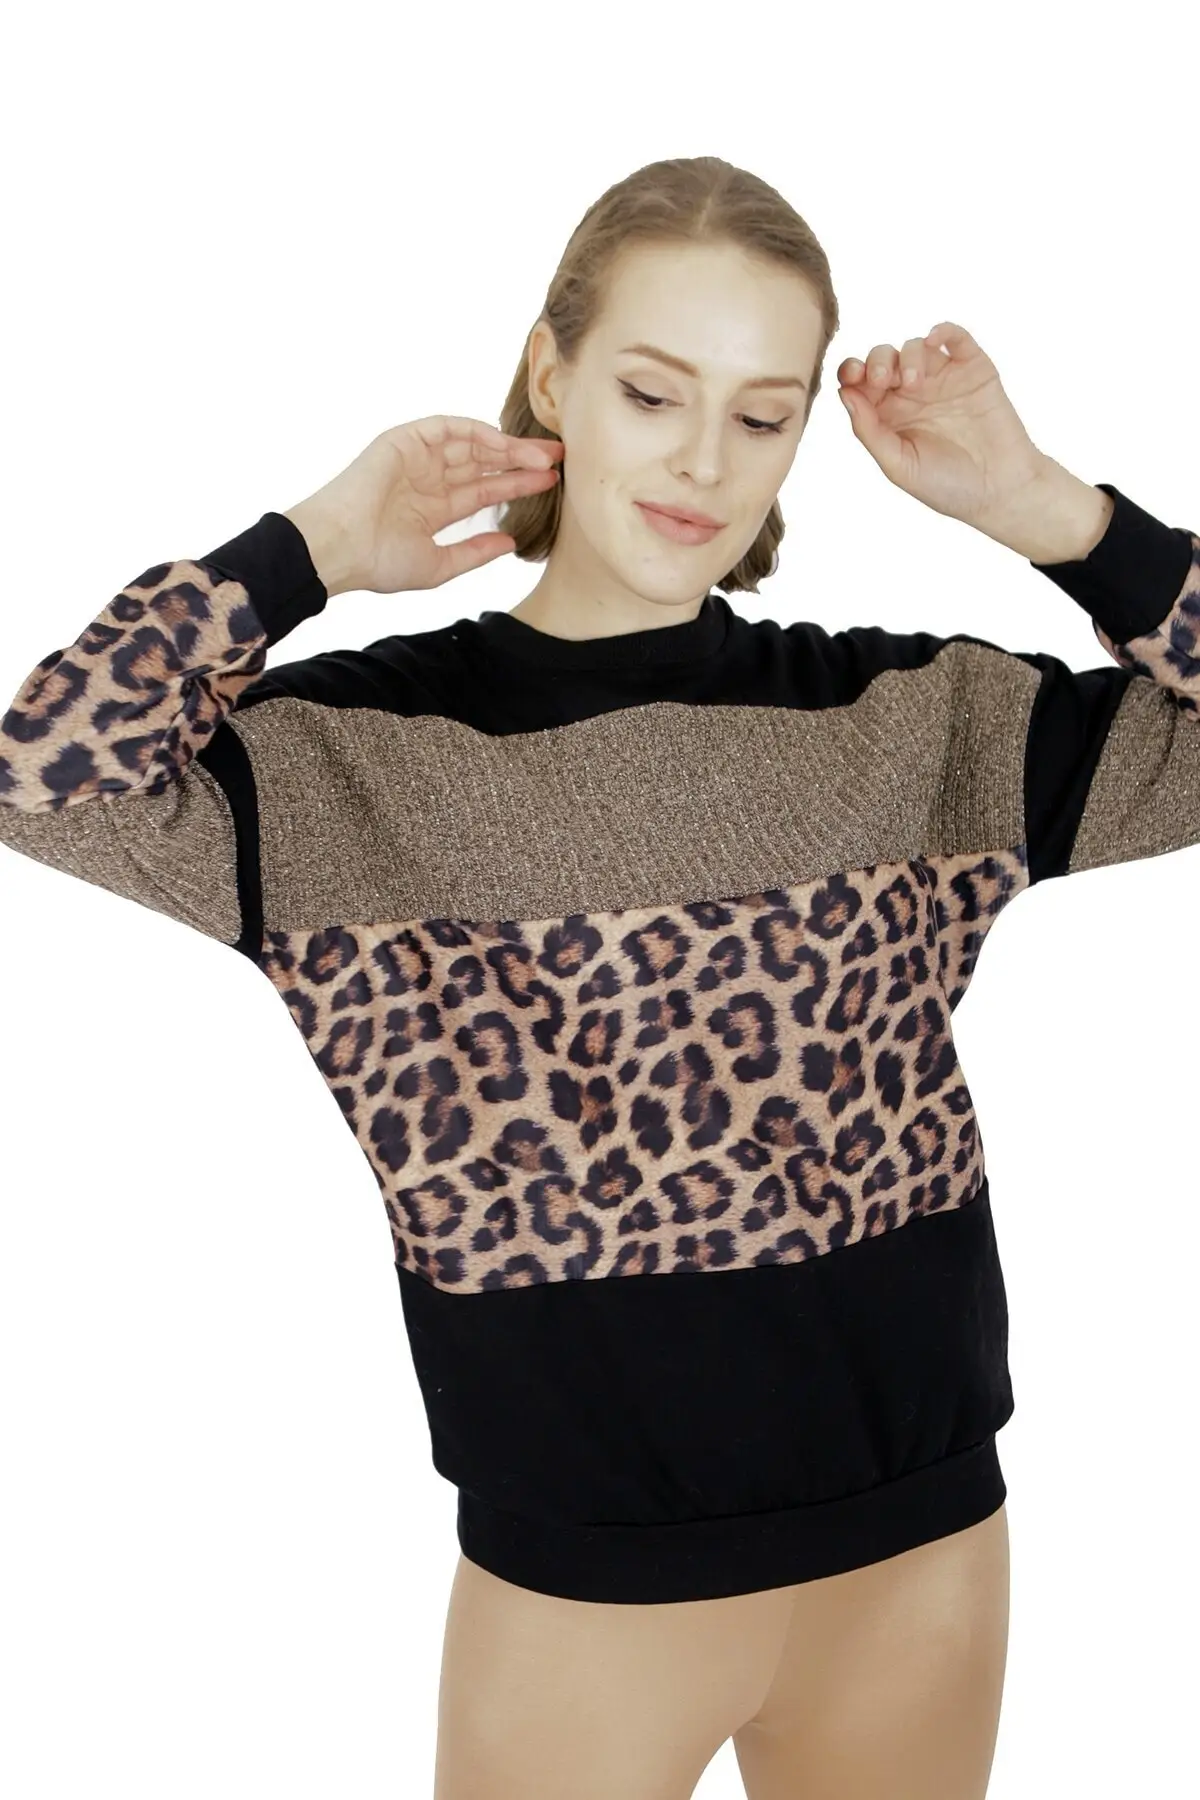 Женский черный верблюжий Леопардовый пуловер женский свитер | Женская одежда